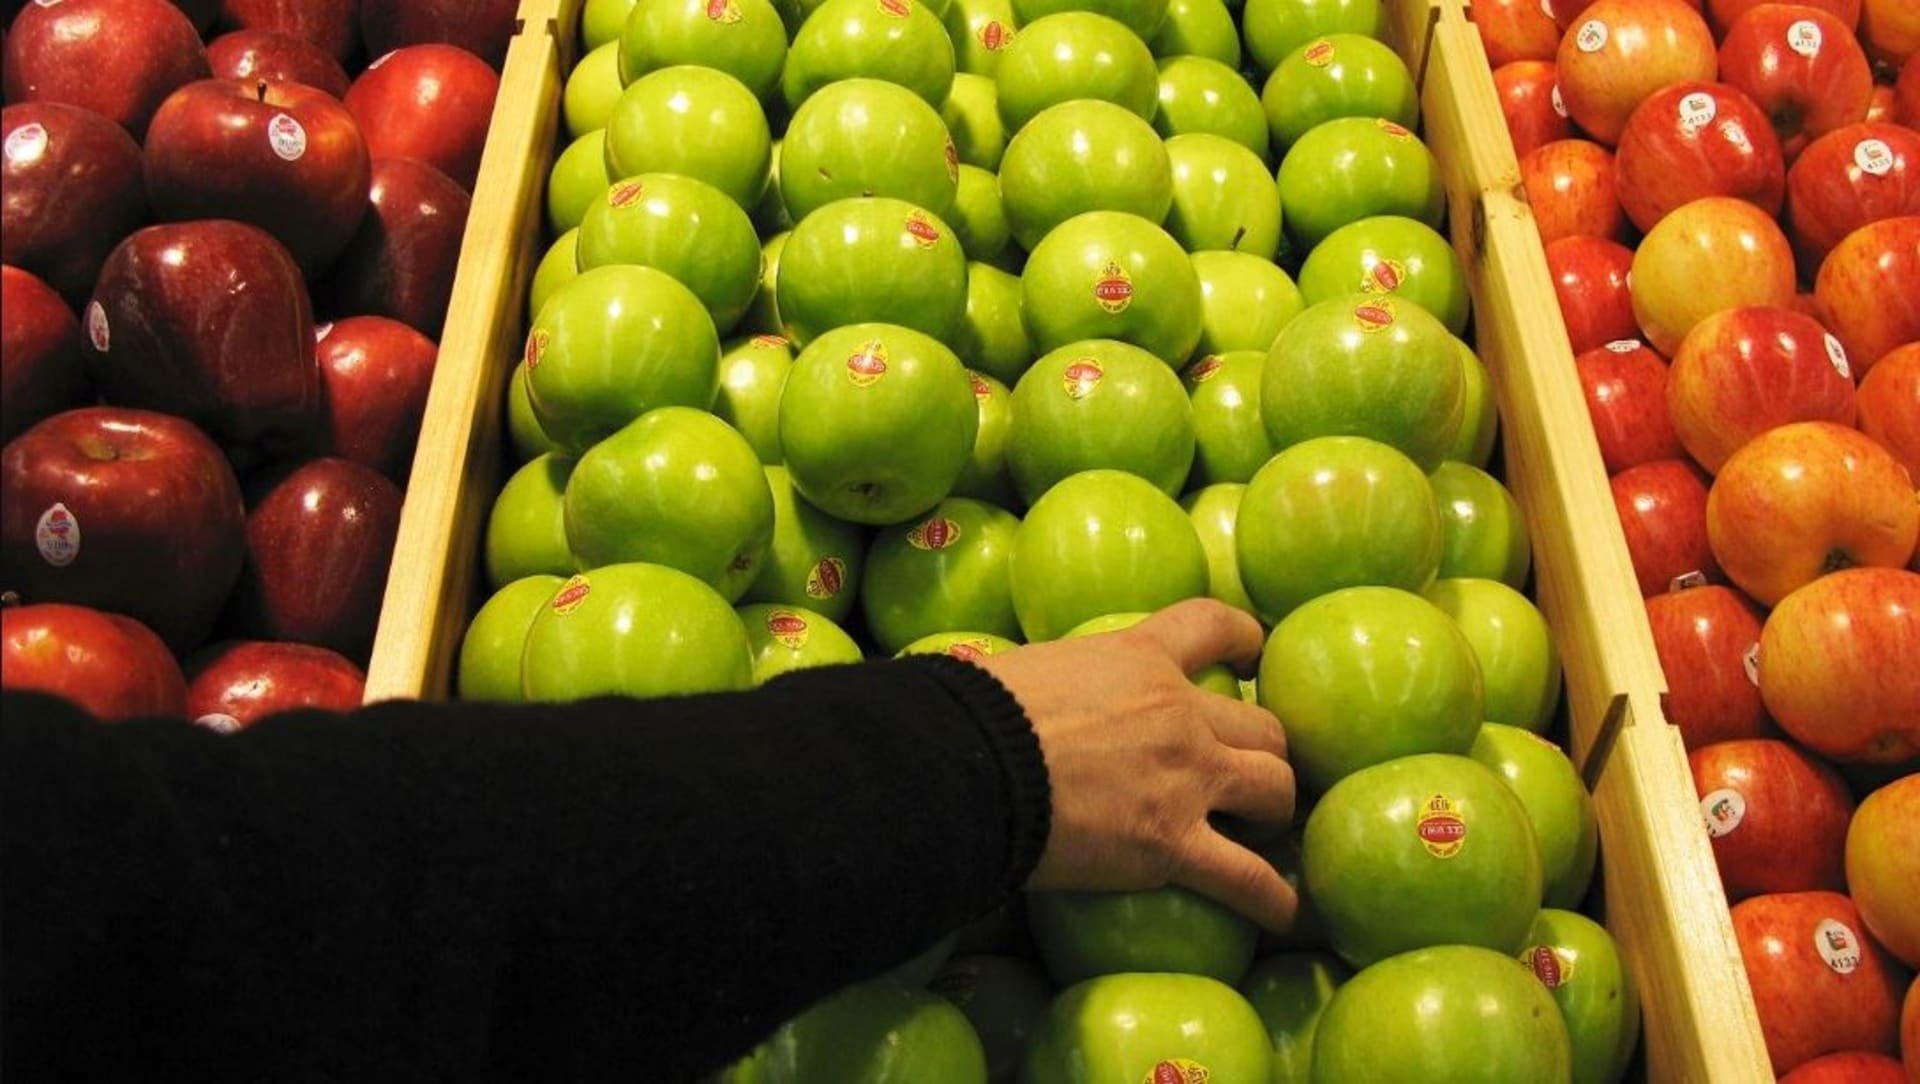 التفاح الأحمر أو الأخضر.. خبيرة تغذية توضح أيهما الأفضل لجسم الإنسان